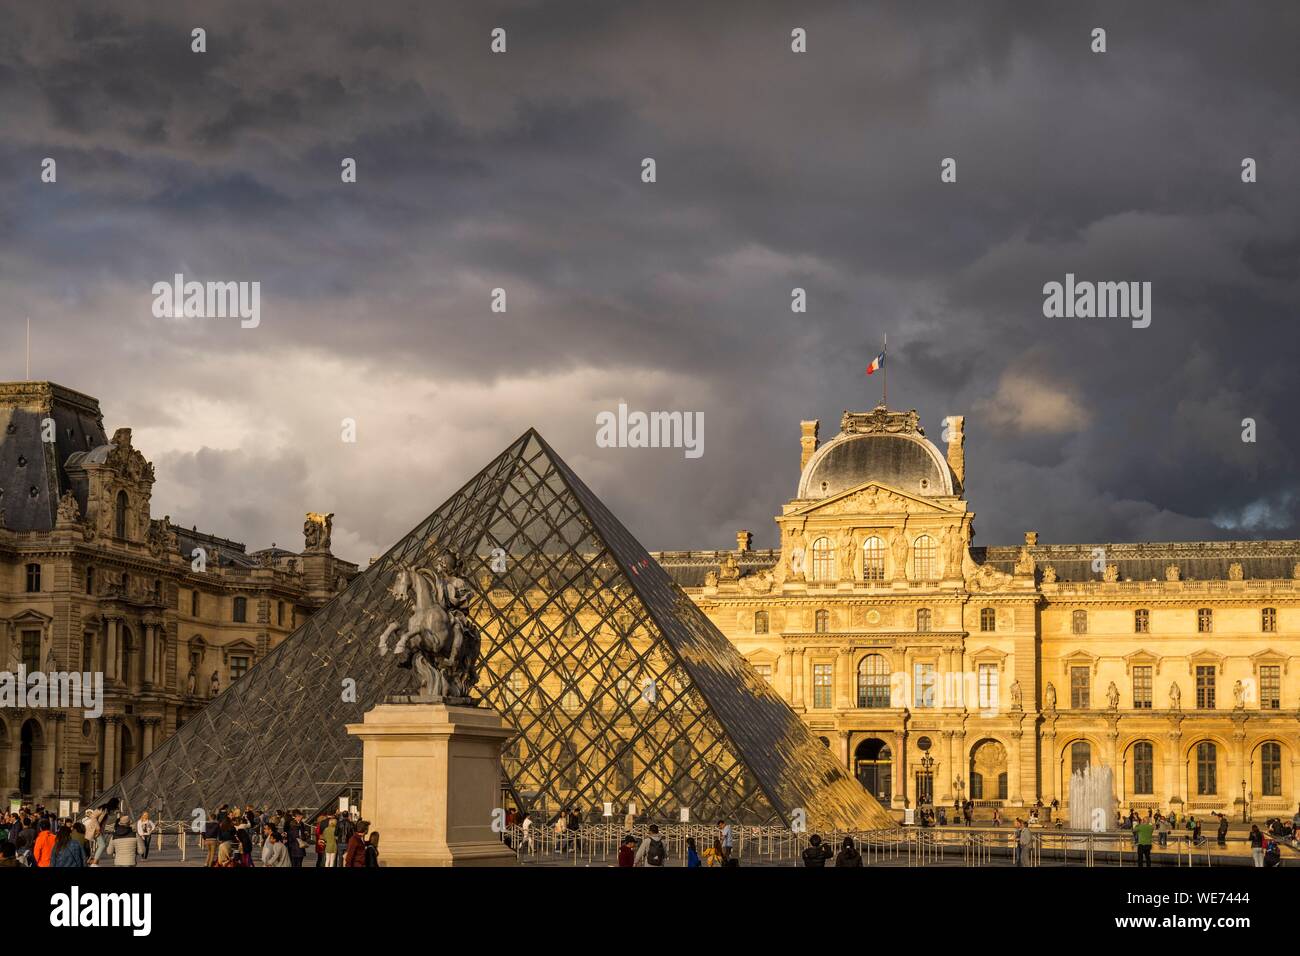 France, Paris, région classée au Patrimoine Mondial de l'UNESCO, le Musée du Louvre, la pyramide du Louvre par l'architecte Ieoh Ming Pei Banque D'Images